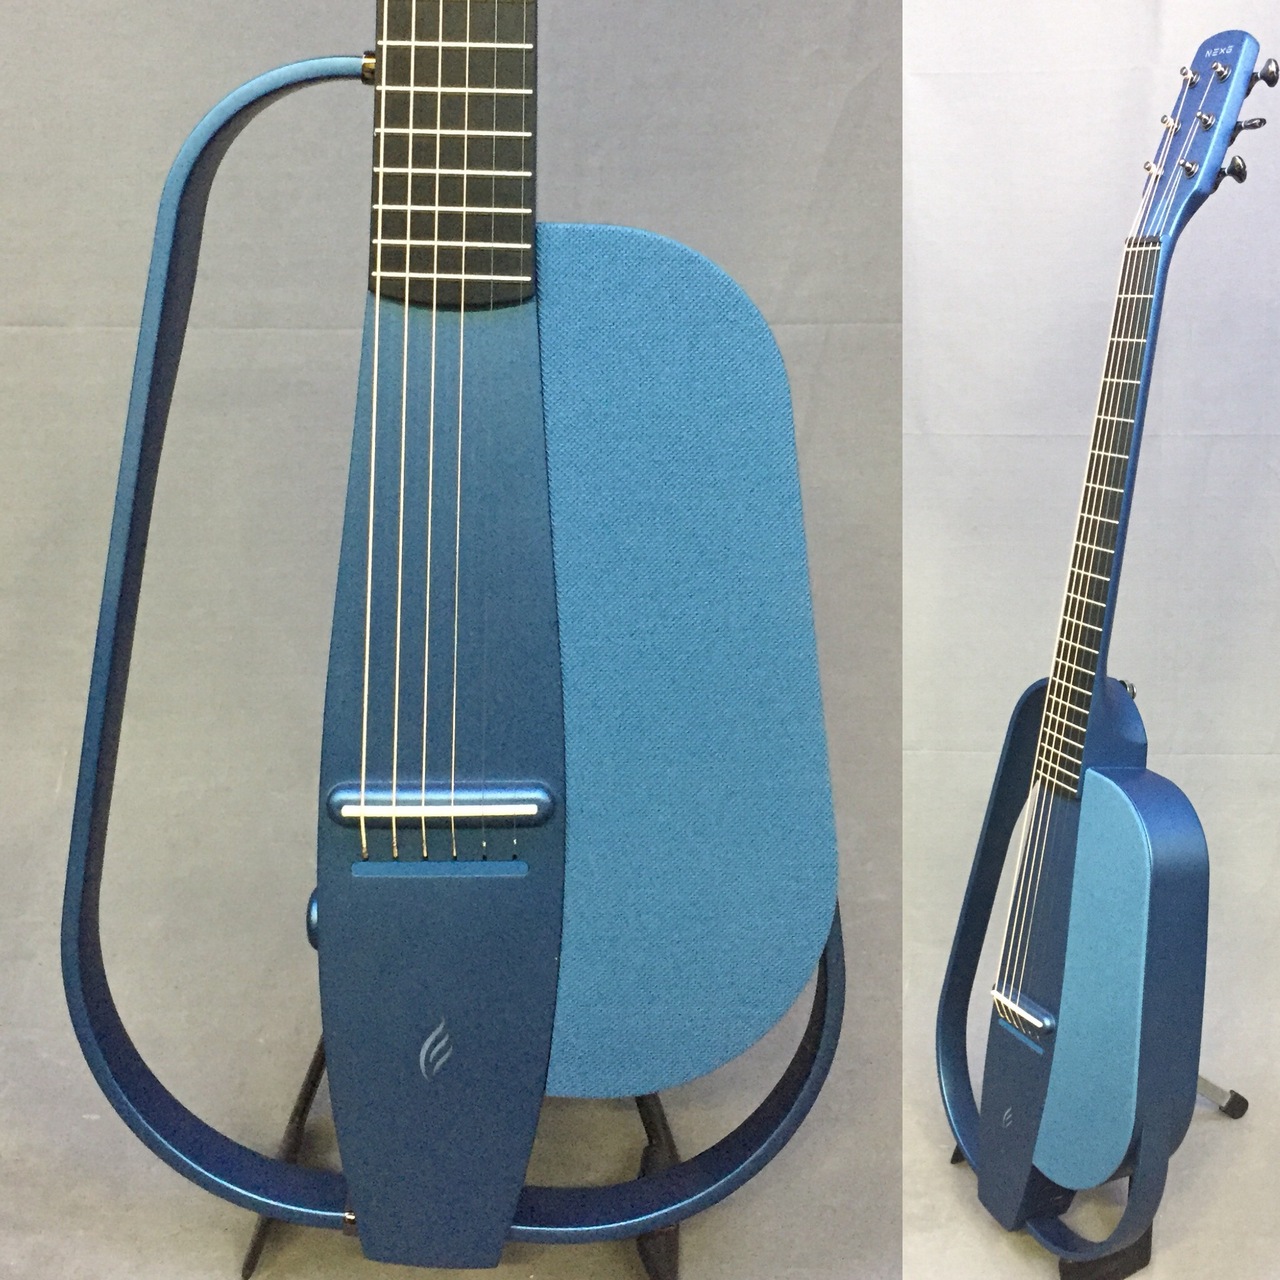 ENYA Guitars NEXG Blue スマート・オーディオ・ギター